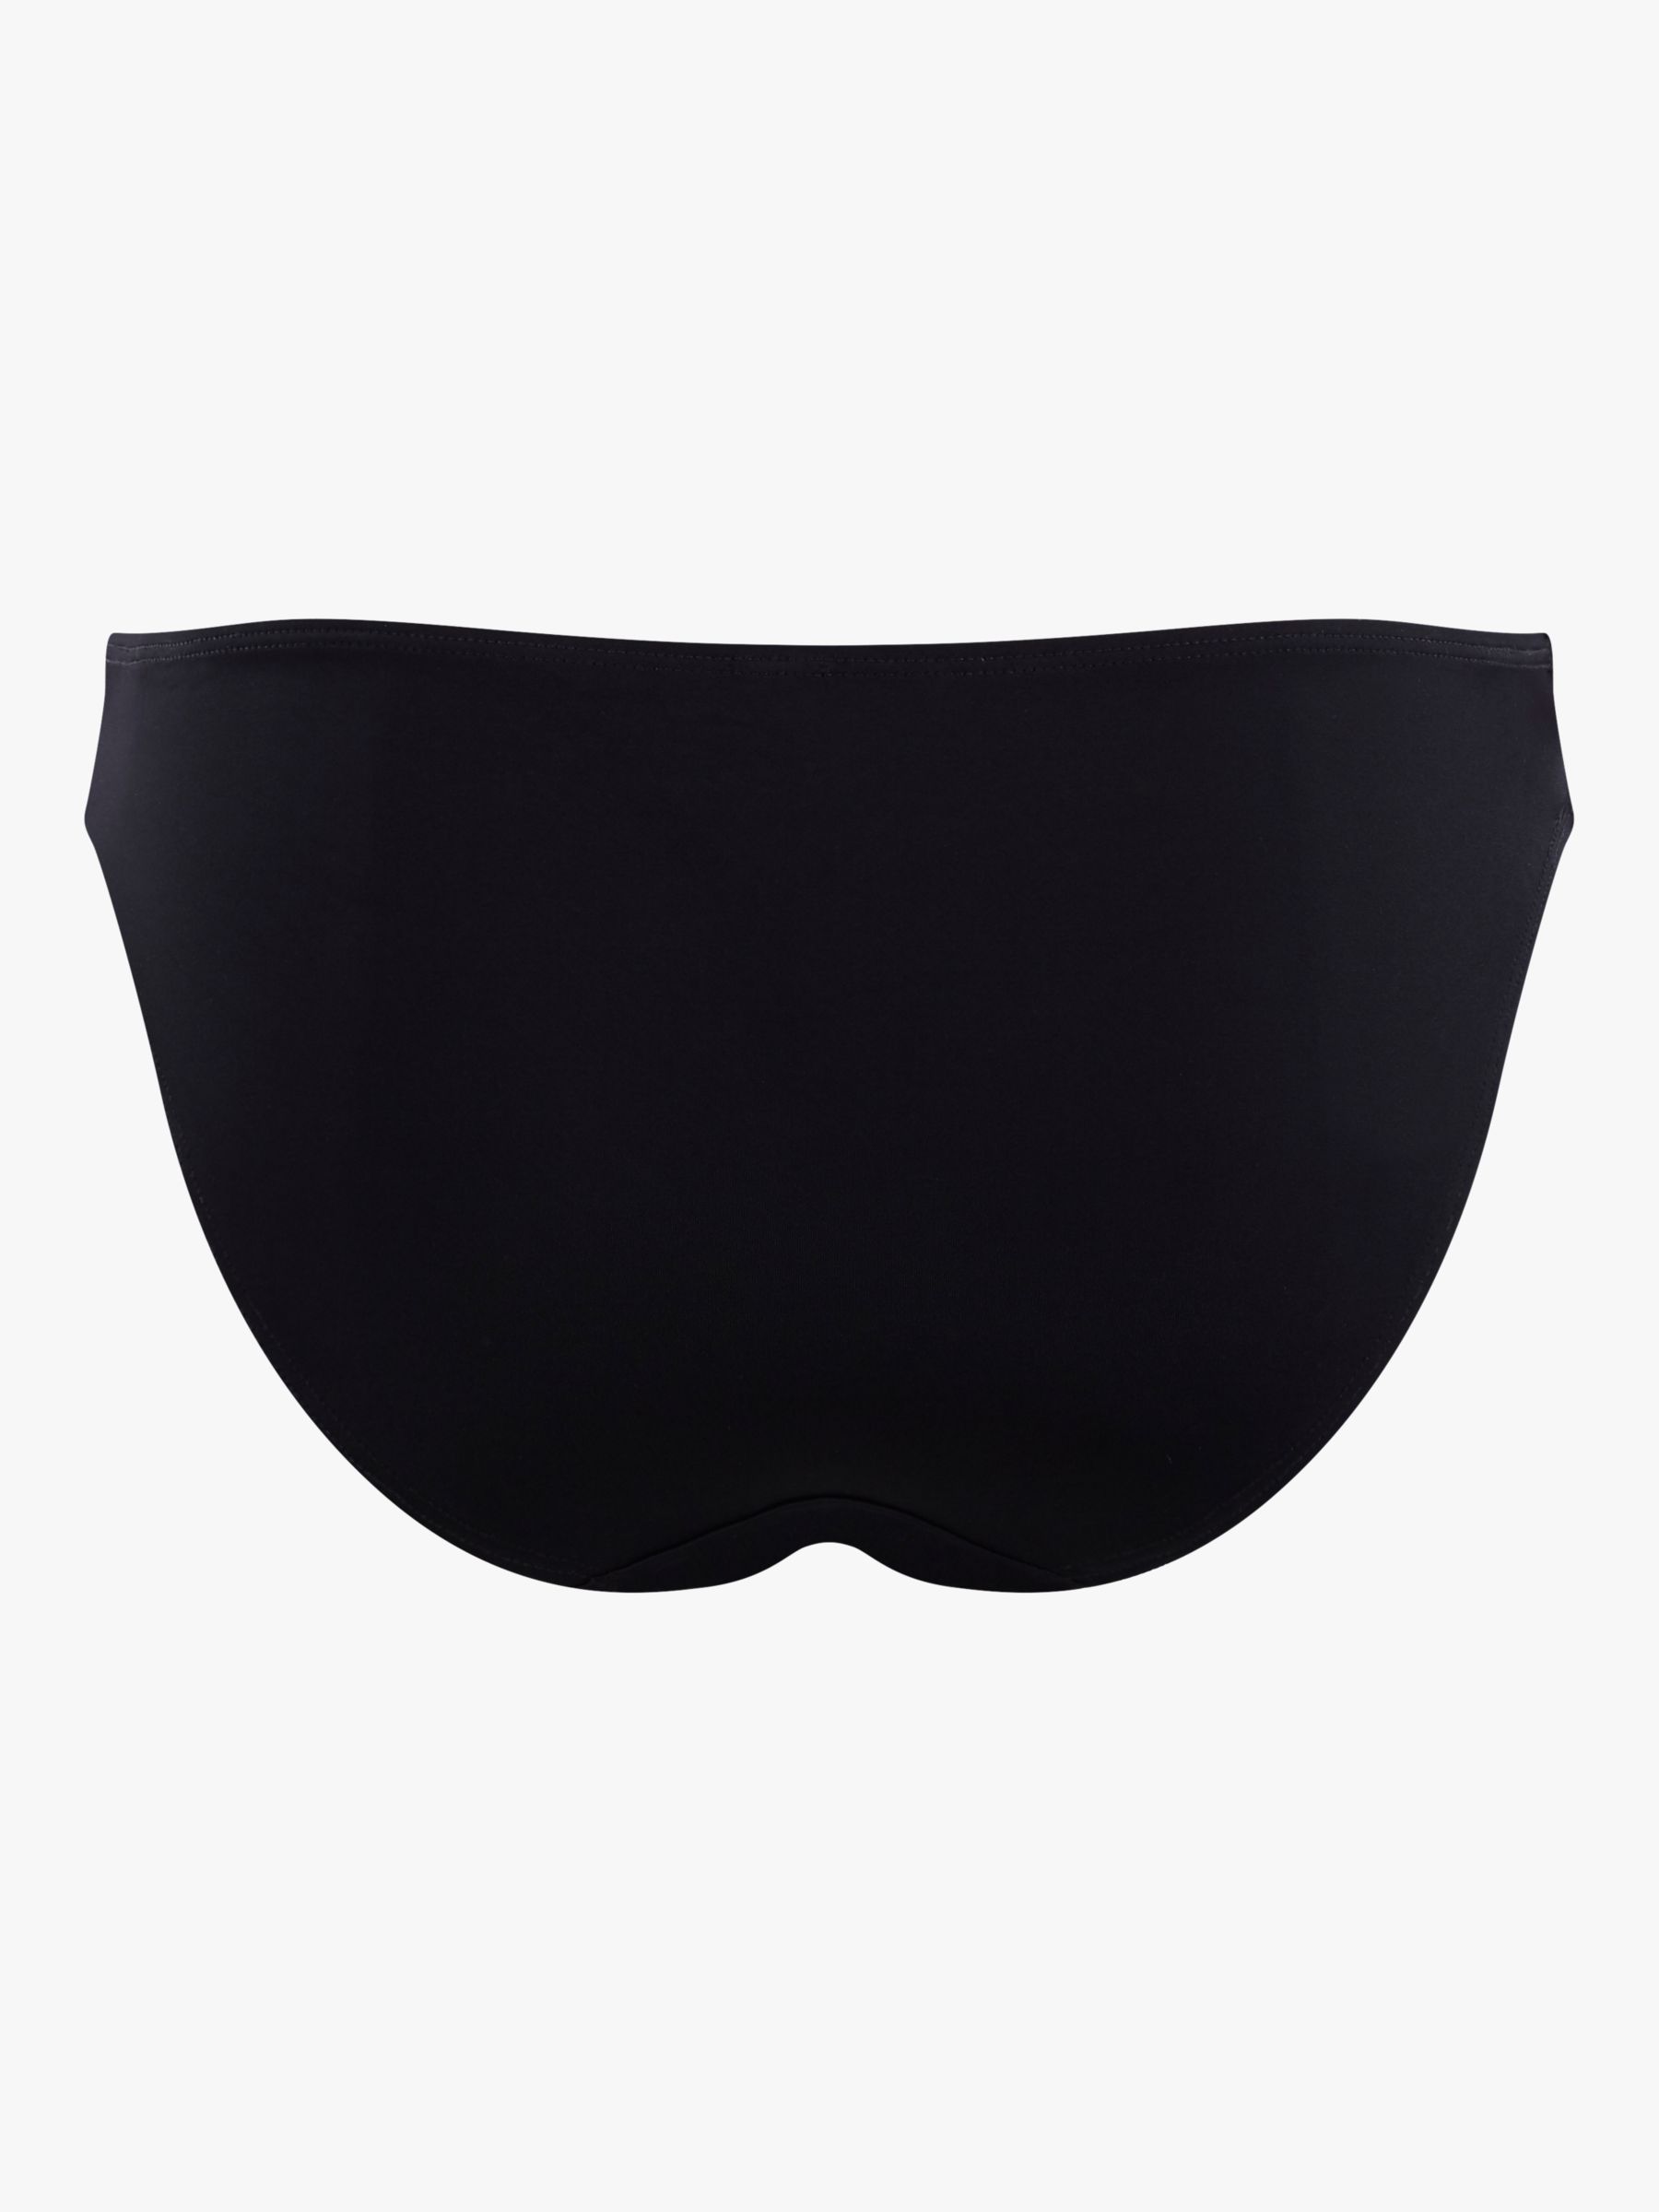 Buy Panache Anya Riva Classic Bikini Bottoms, Black Online at johnlewis.com